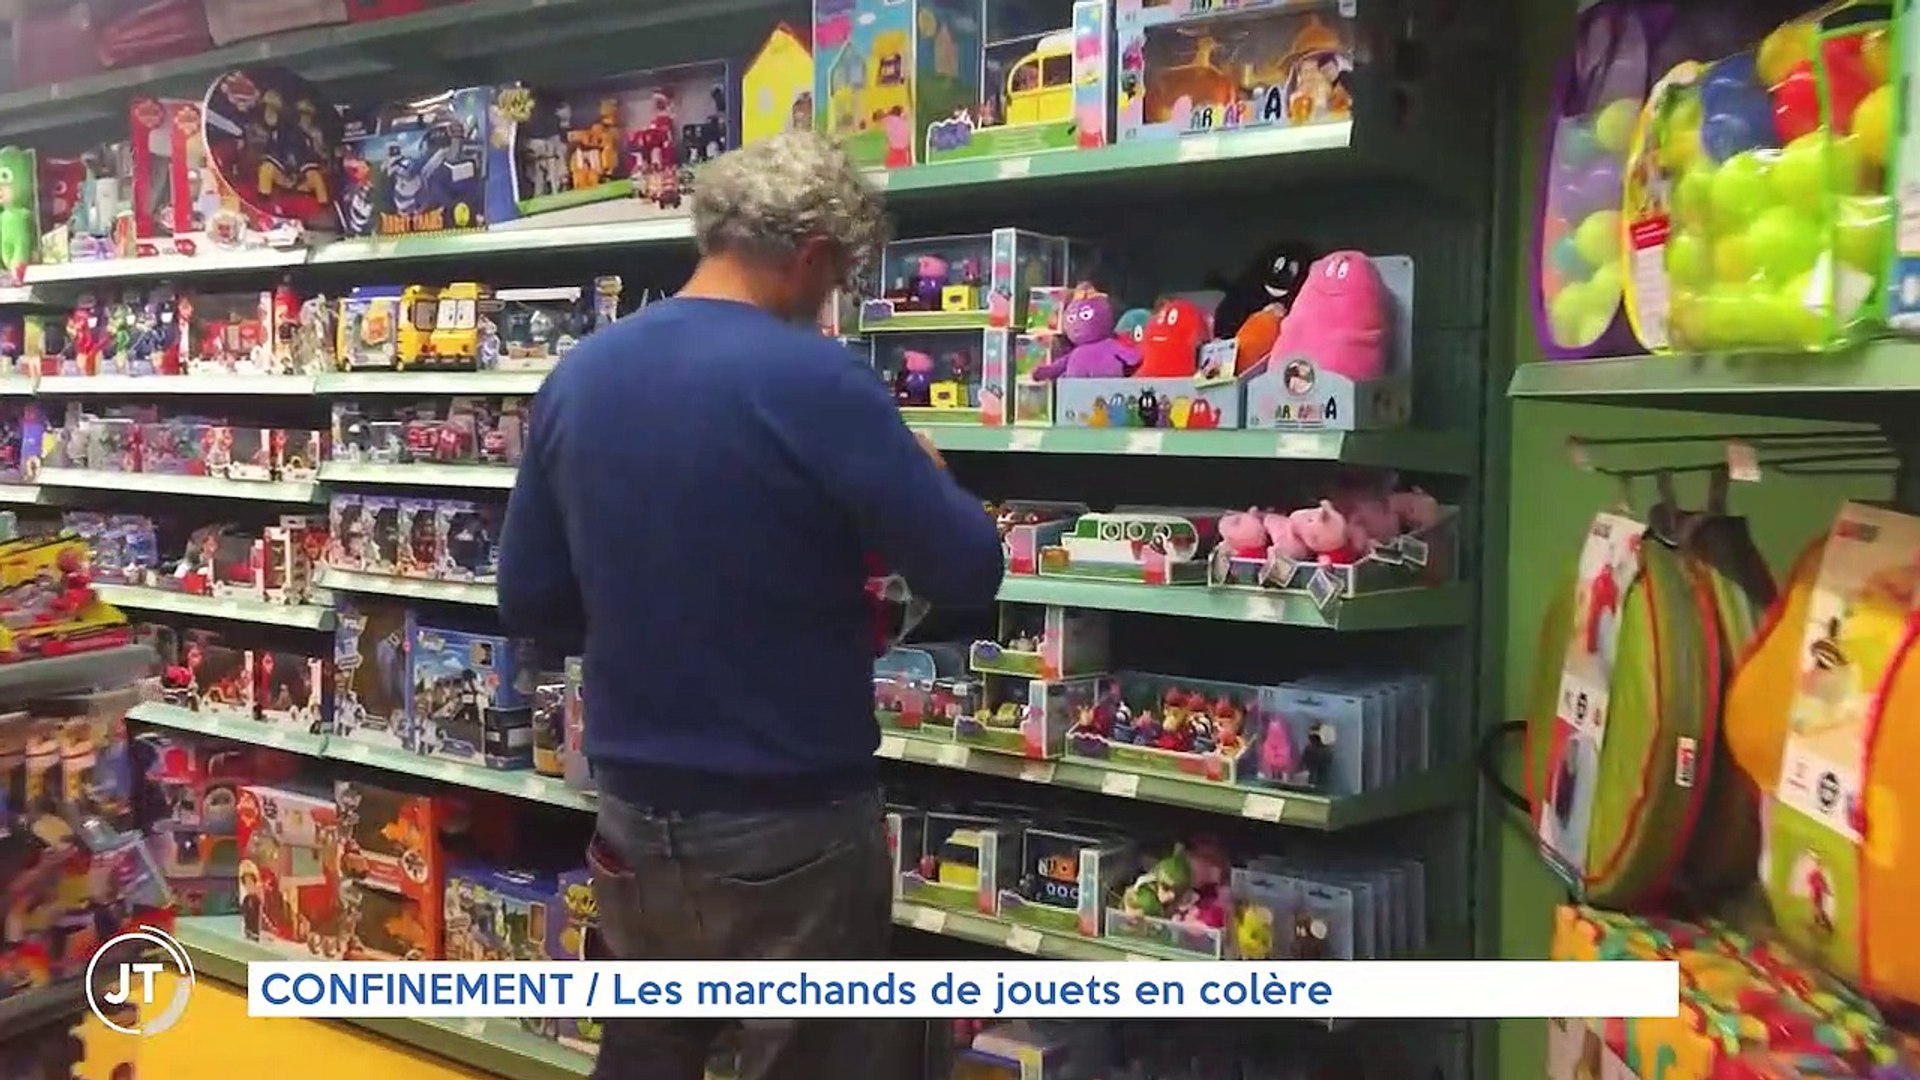 CONFINEMENT / Les marchands de jouets en colère - Vidéo Dailymotion